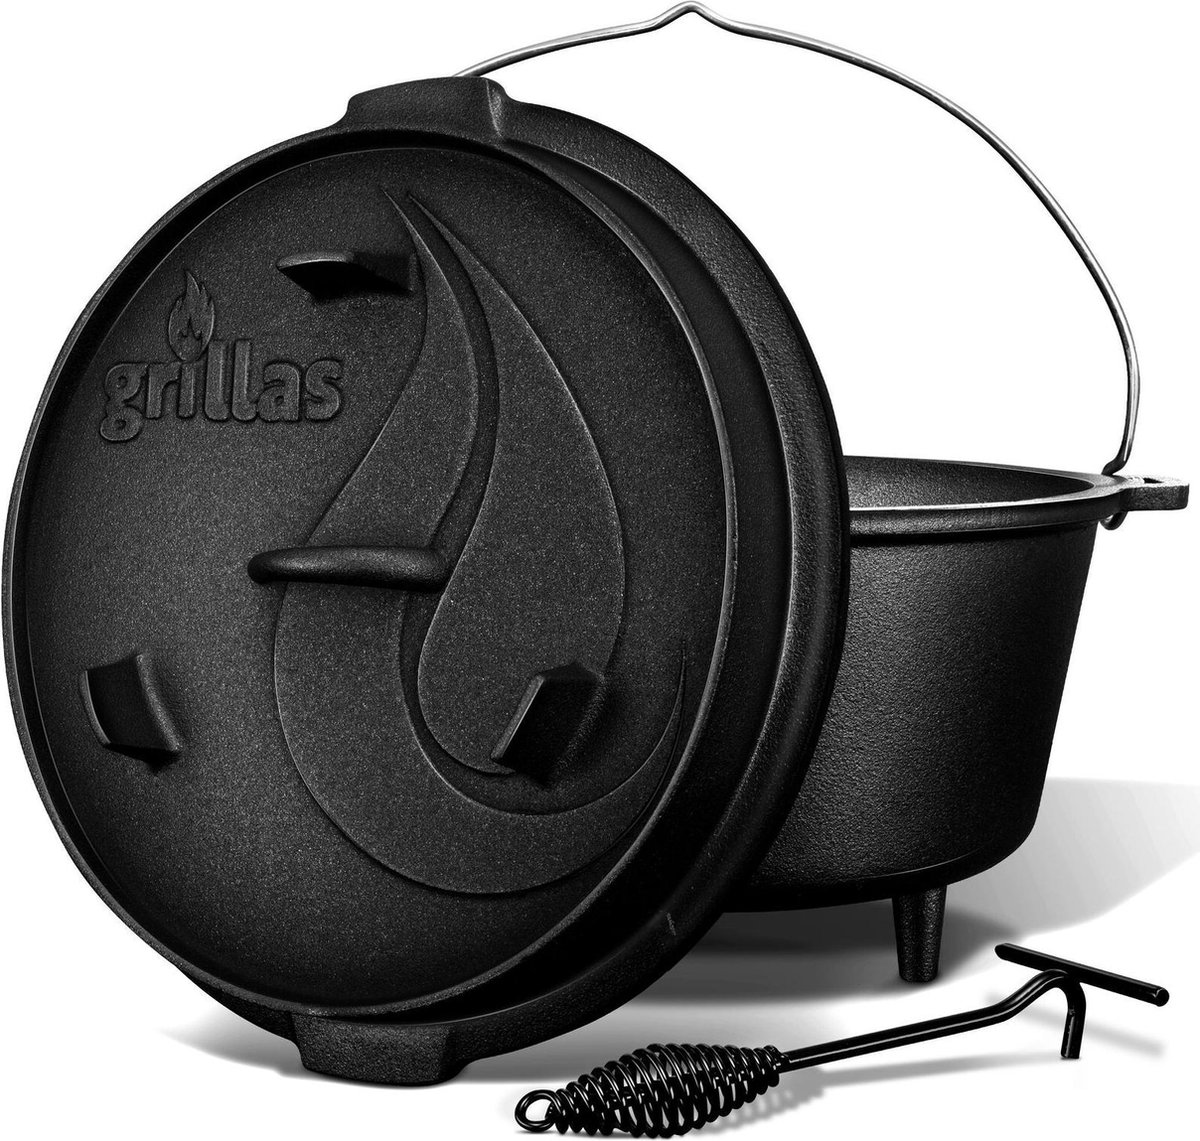 Grillas- Dutch Oven, 9L, BBQ pan, gietijzer, met pootjes